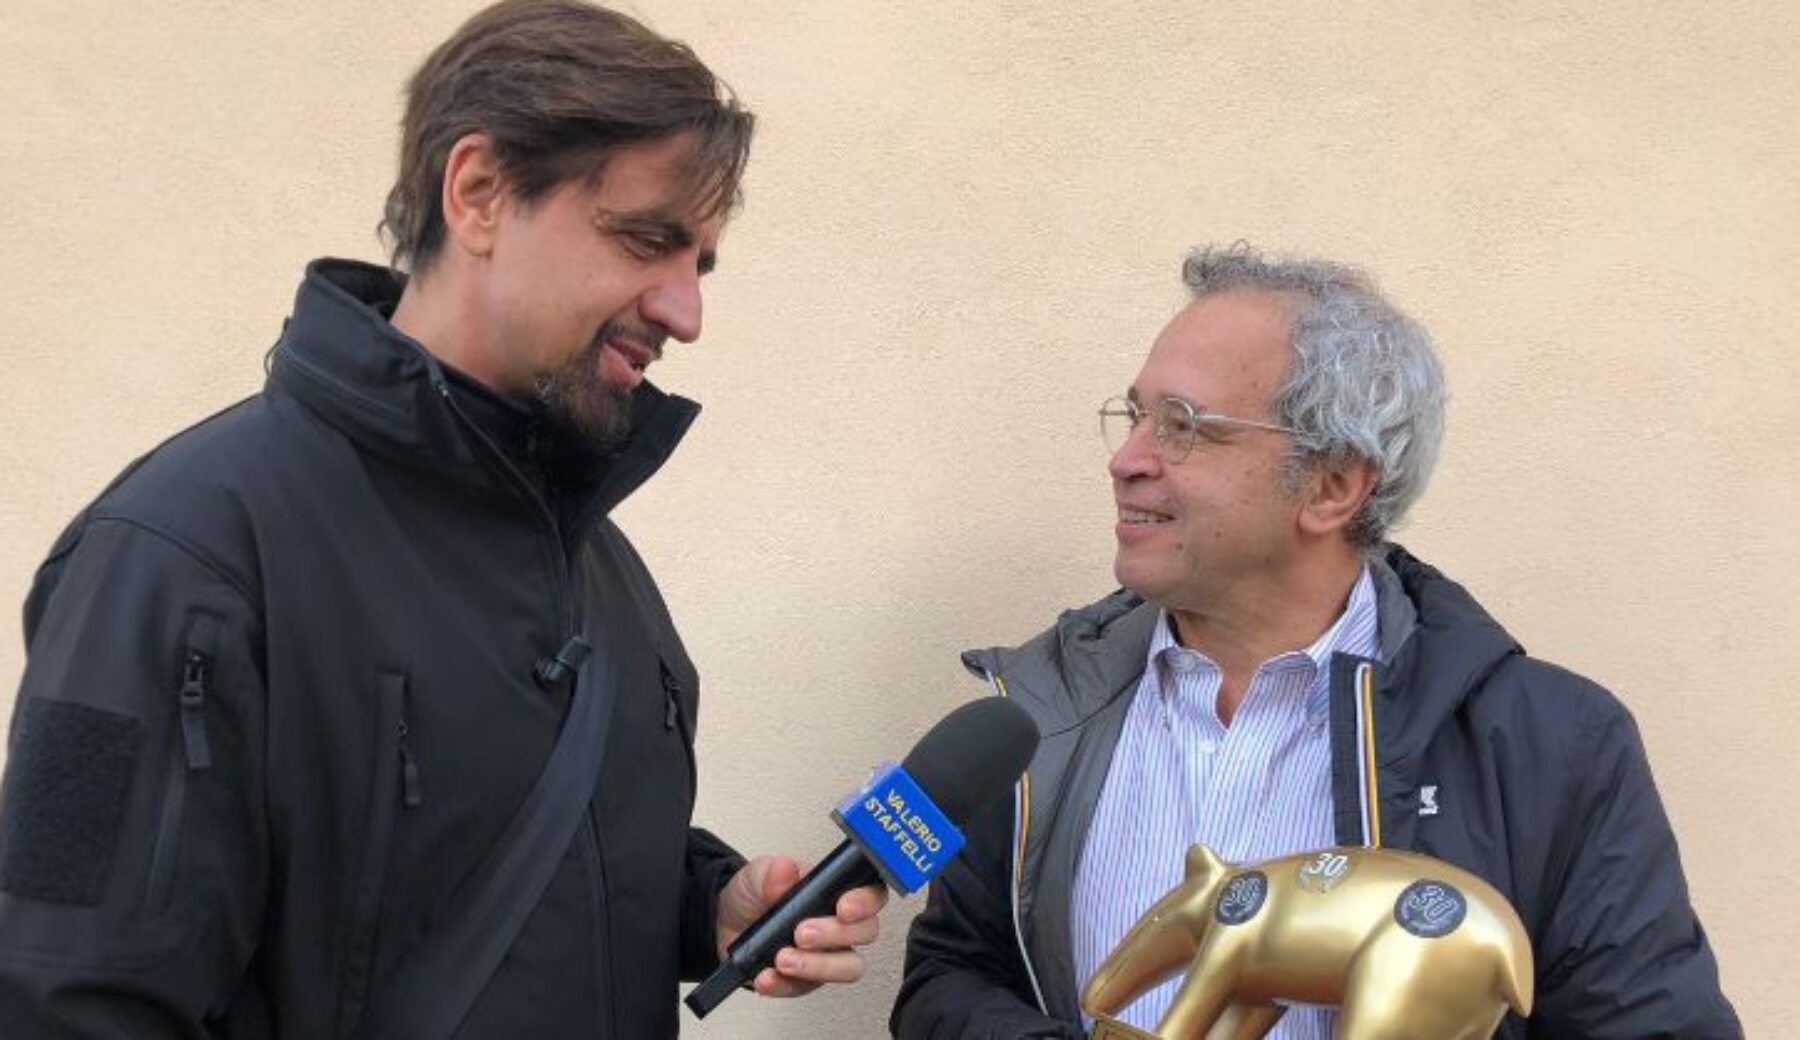 A Striscia la notizia Tapiro d’oro a Enrico Mentana per lo scontro con l’Agcom sulla par condicio